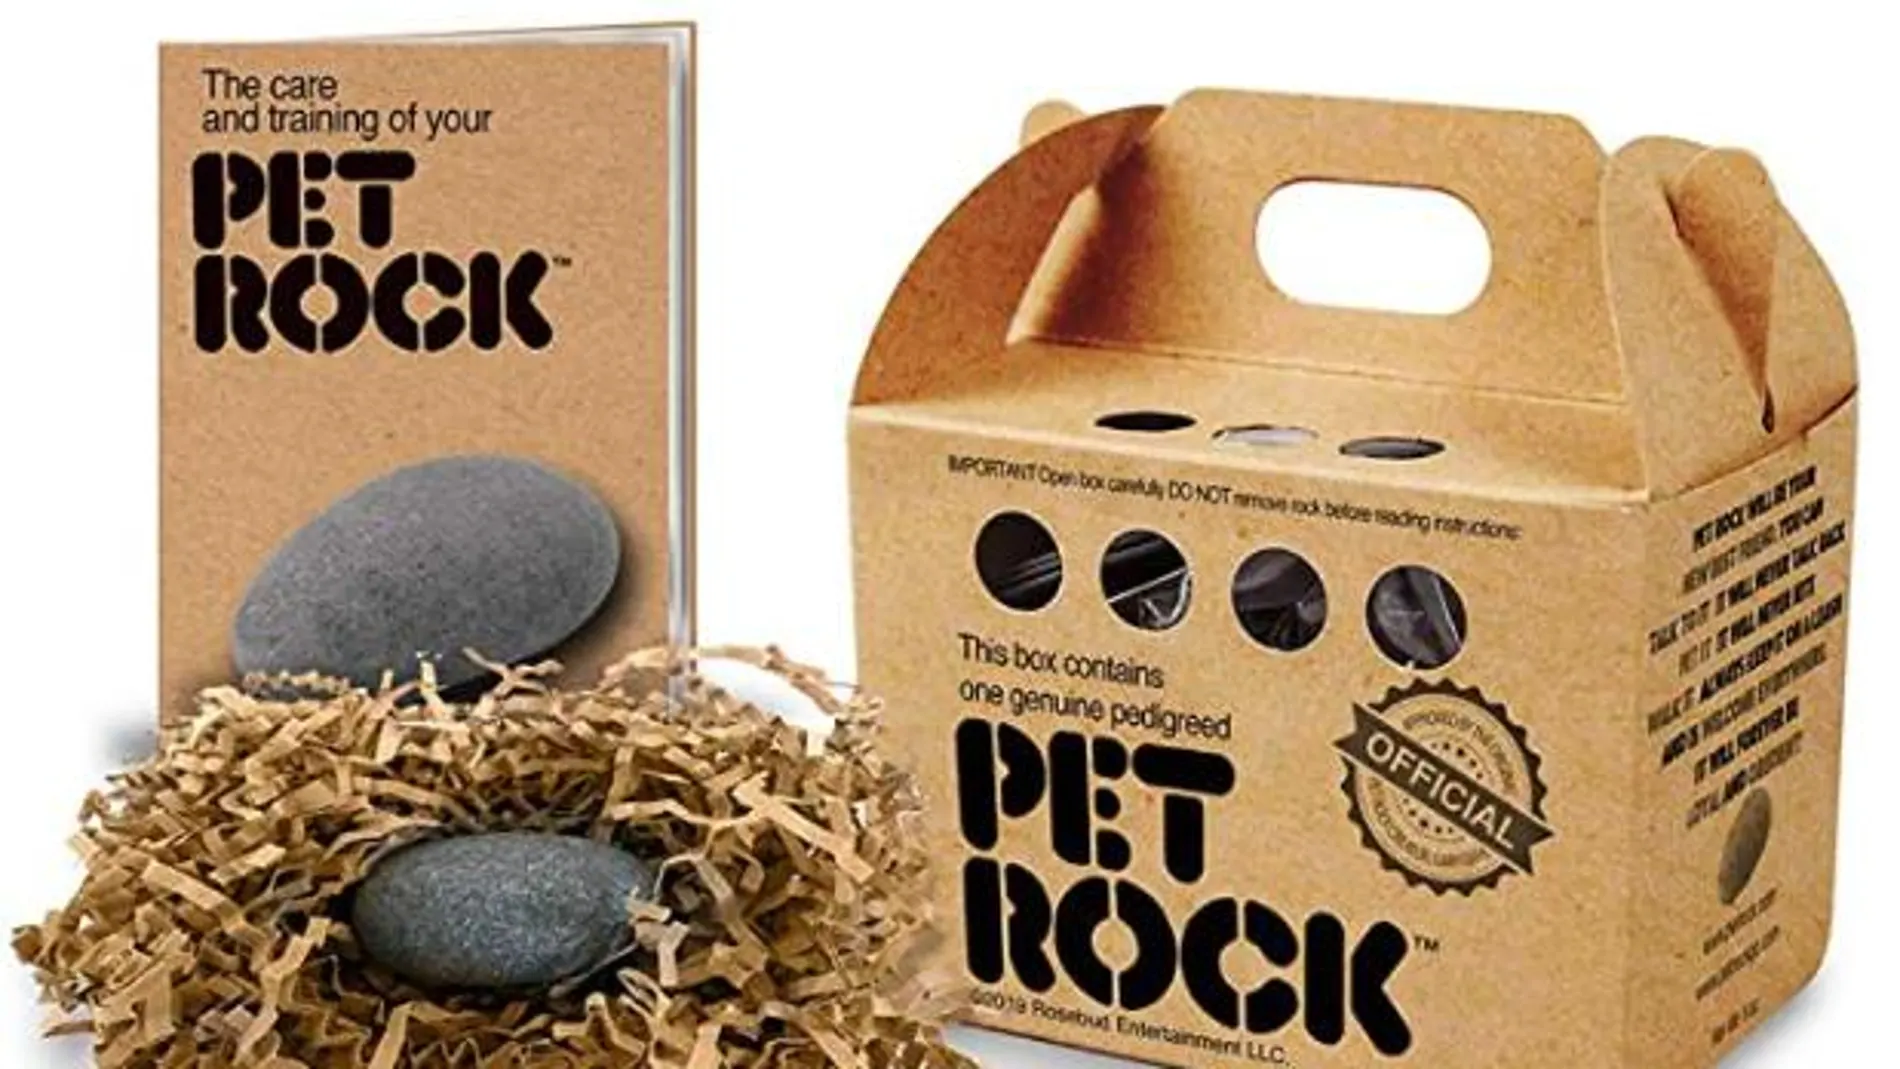 La empresa 'PET ROCK' comercializa piedras como mascotas | Fuente: AMAZON